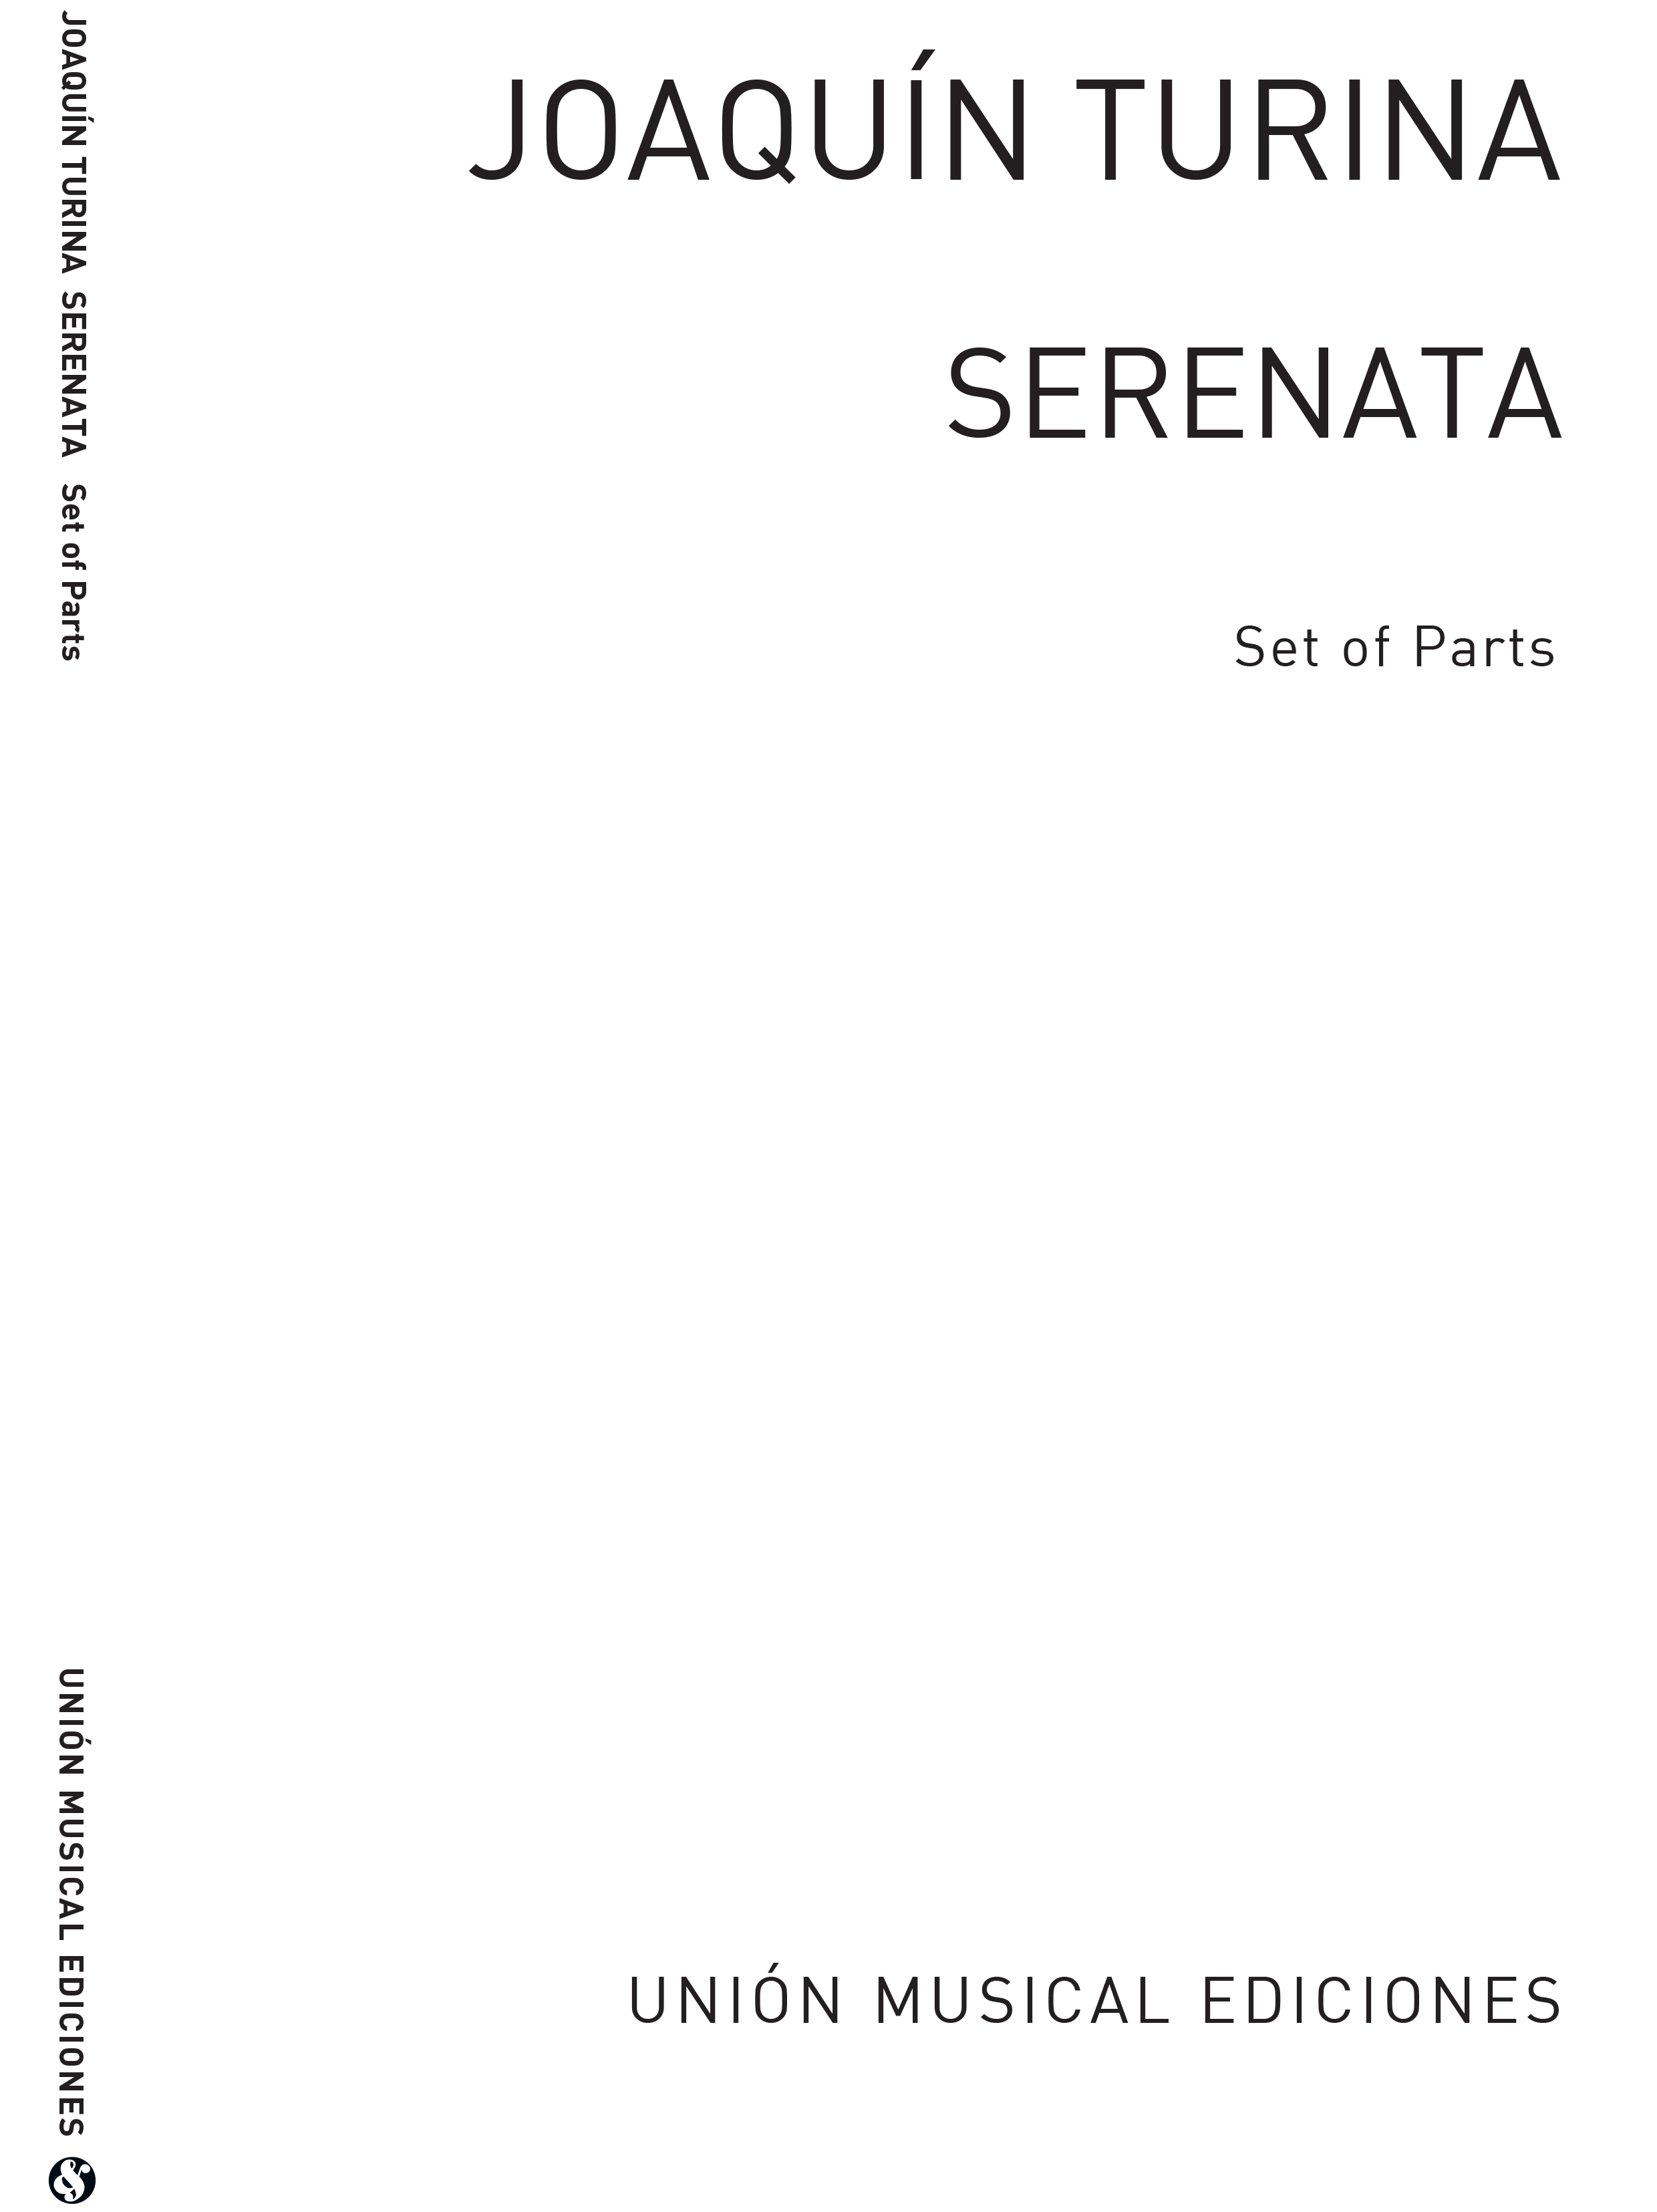 Joaqun Turina: Serenata Opus 87 For String Quartet: String Quartet: Parts